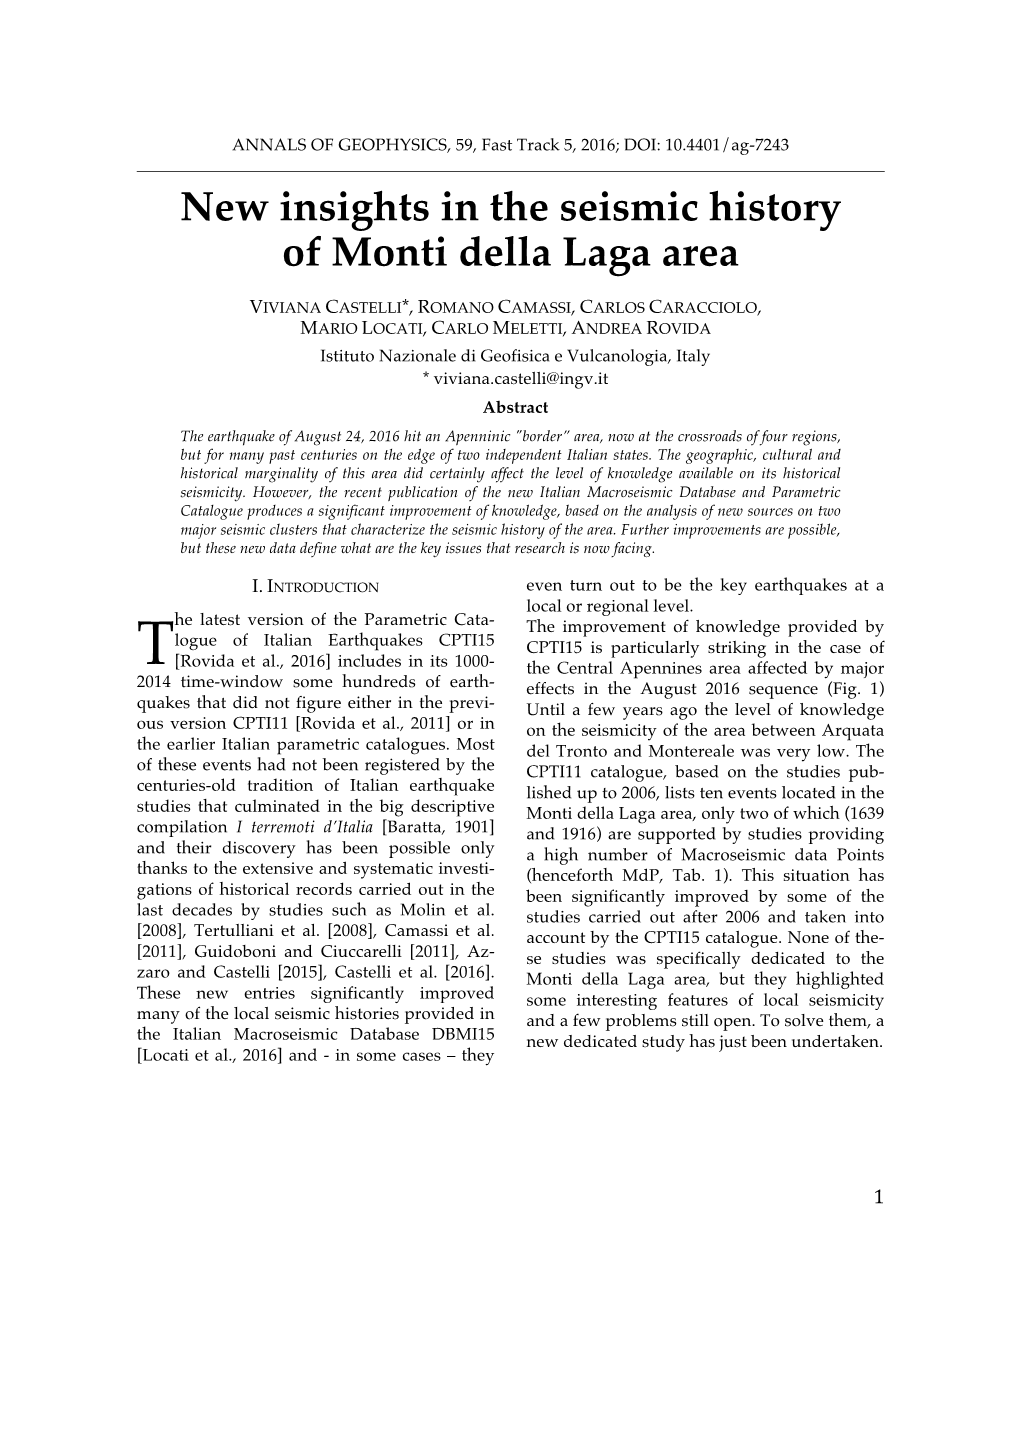 New Insights in the Seismic History of Monti Della Laga Area